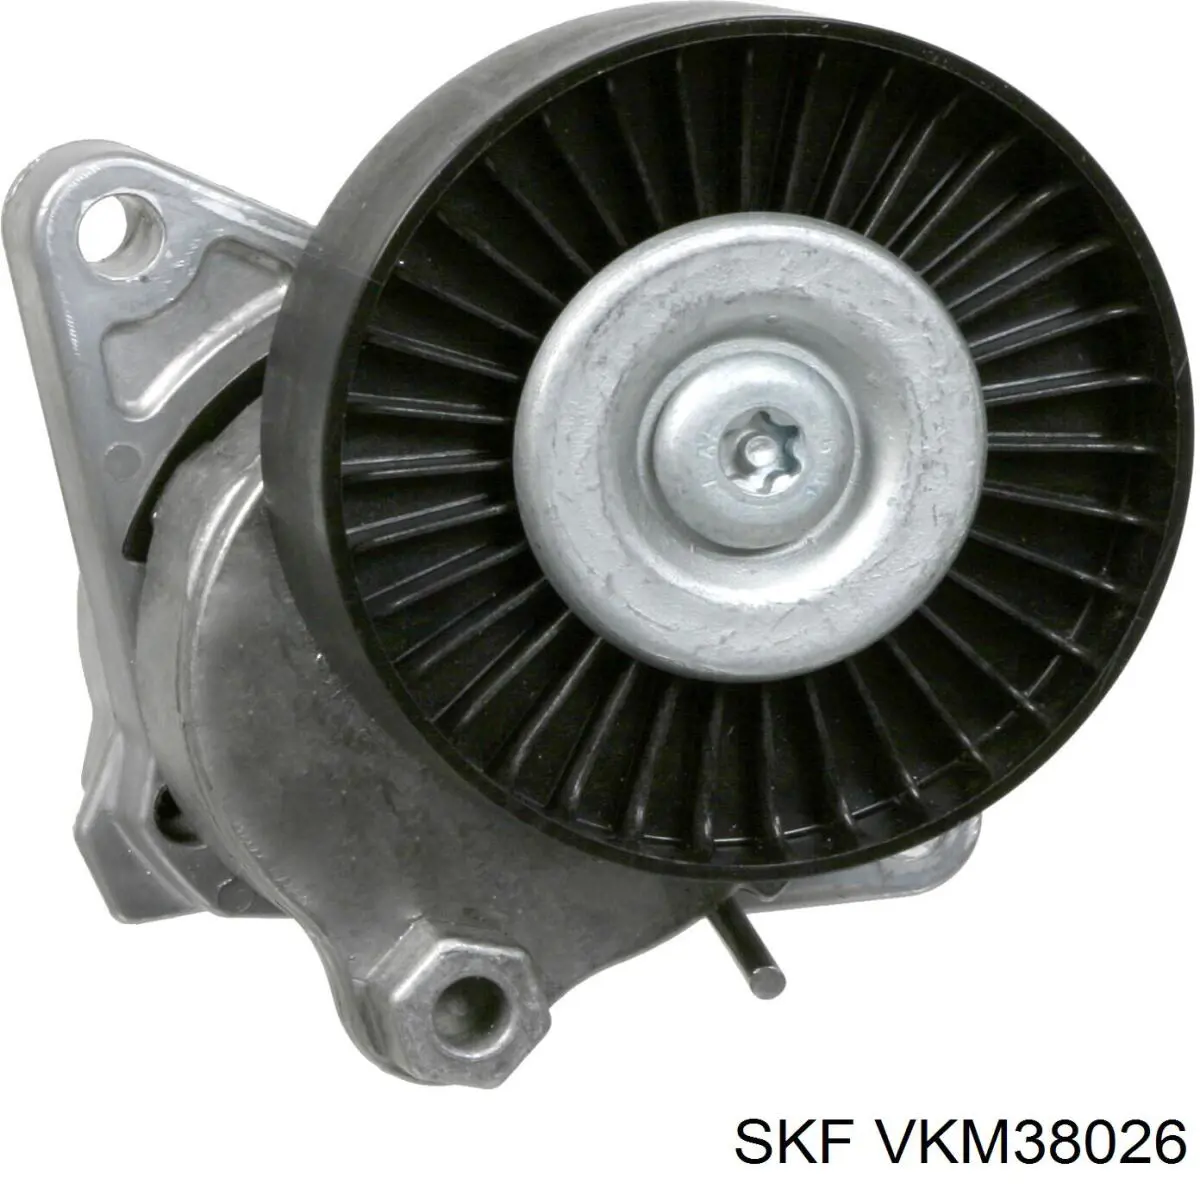 VKM 38026 SKF tensor de correa, correa poli v